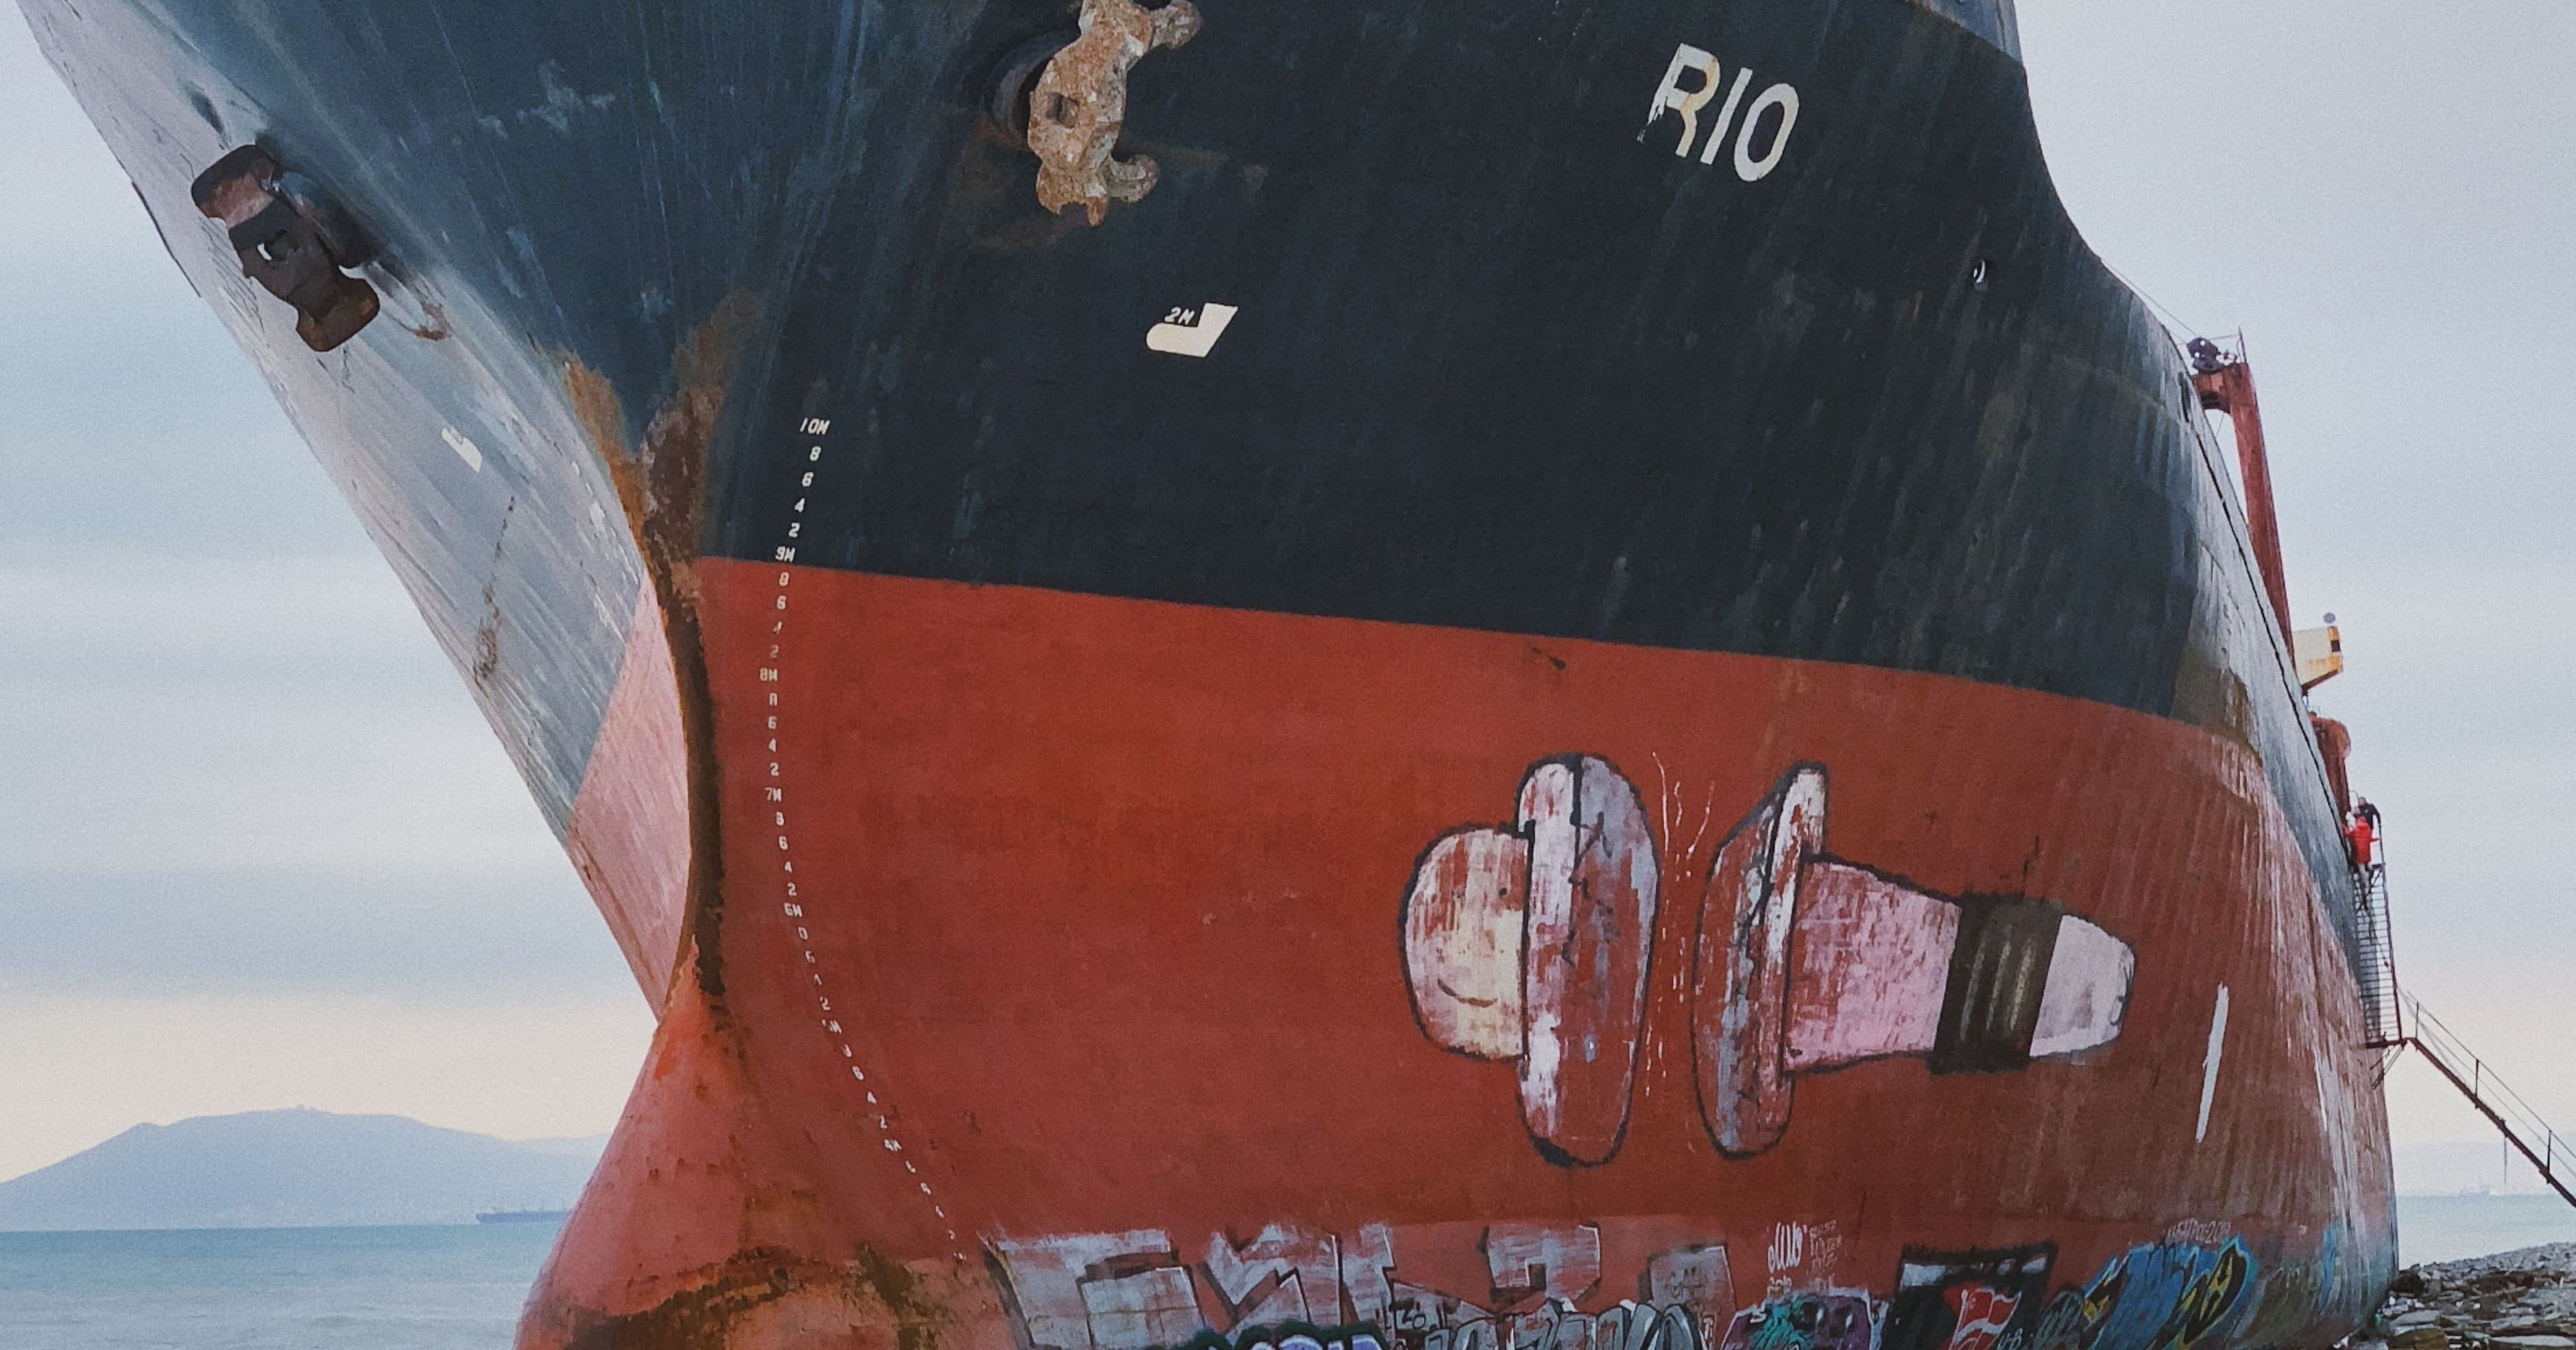  Rahasia terungkap: mengapa lambung kapal dicat merah?